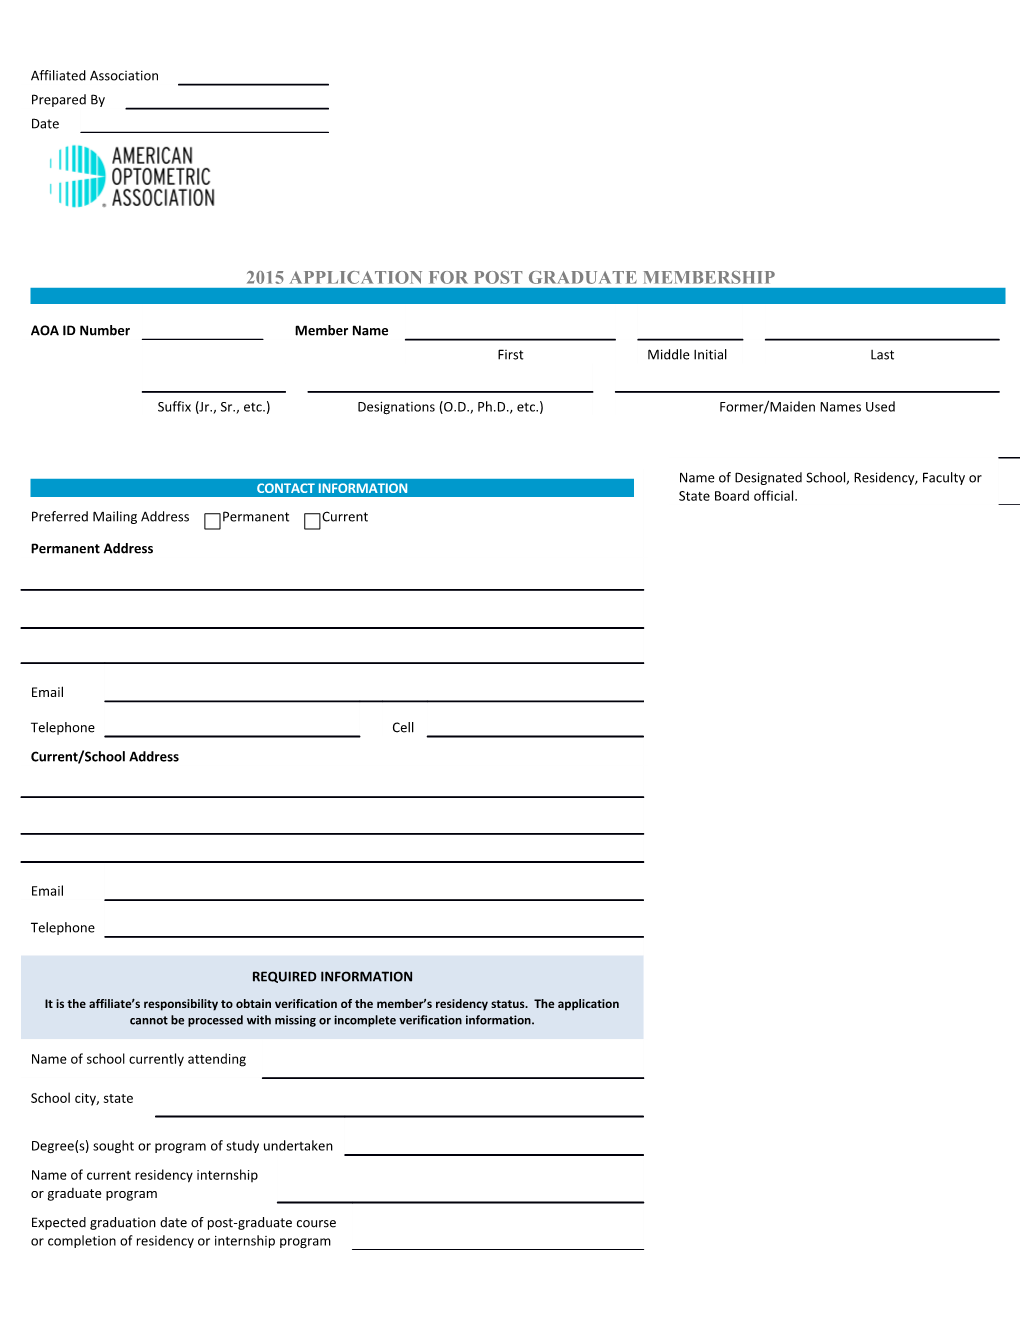 2015 Application for Post Graduate Membership